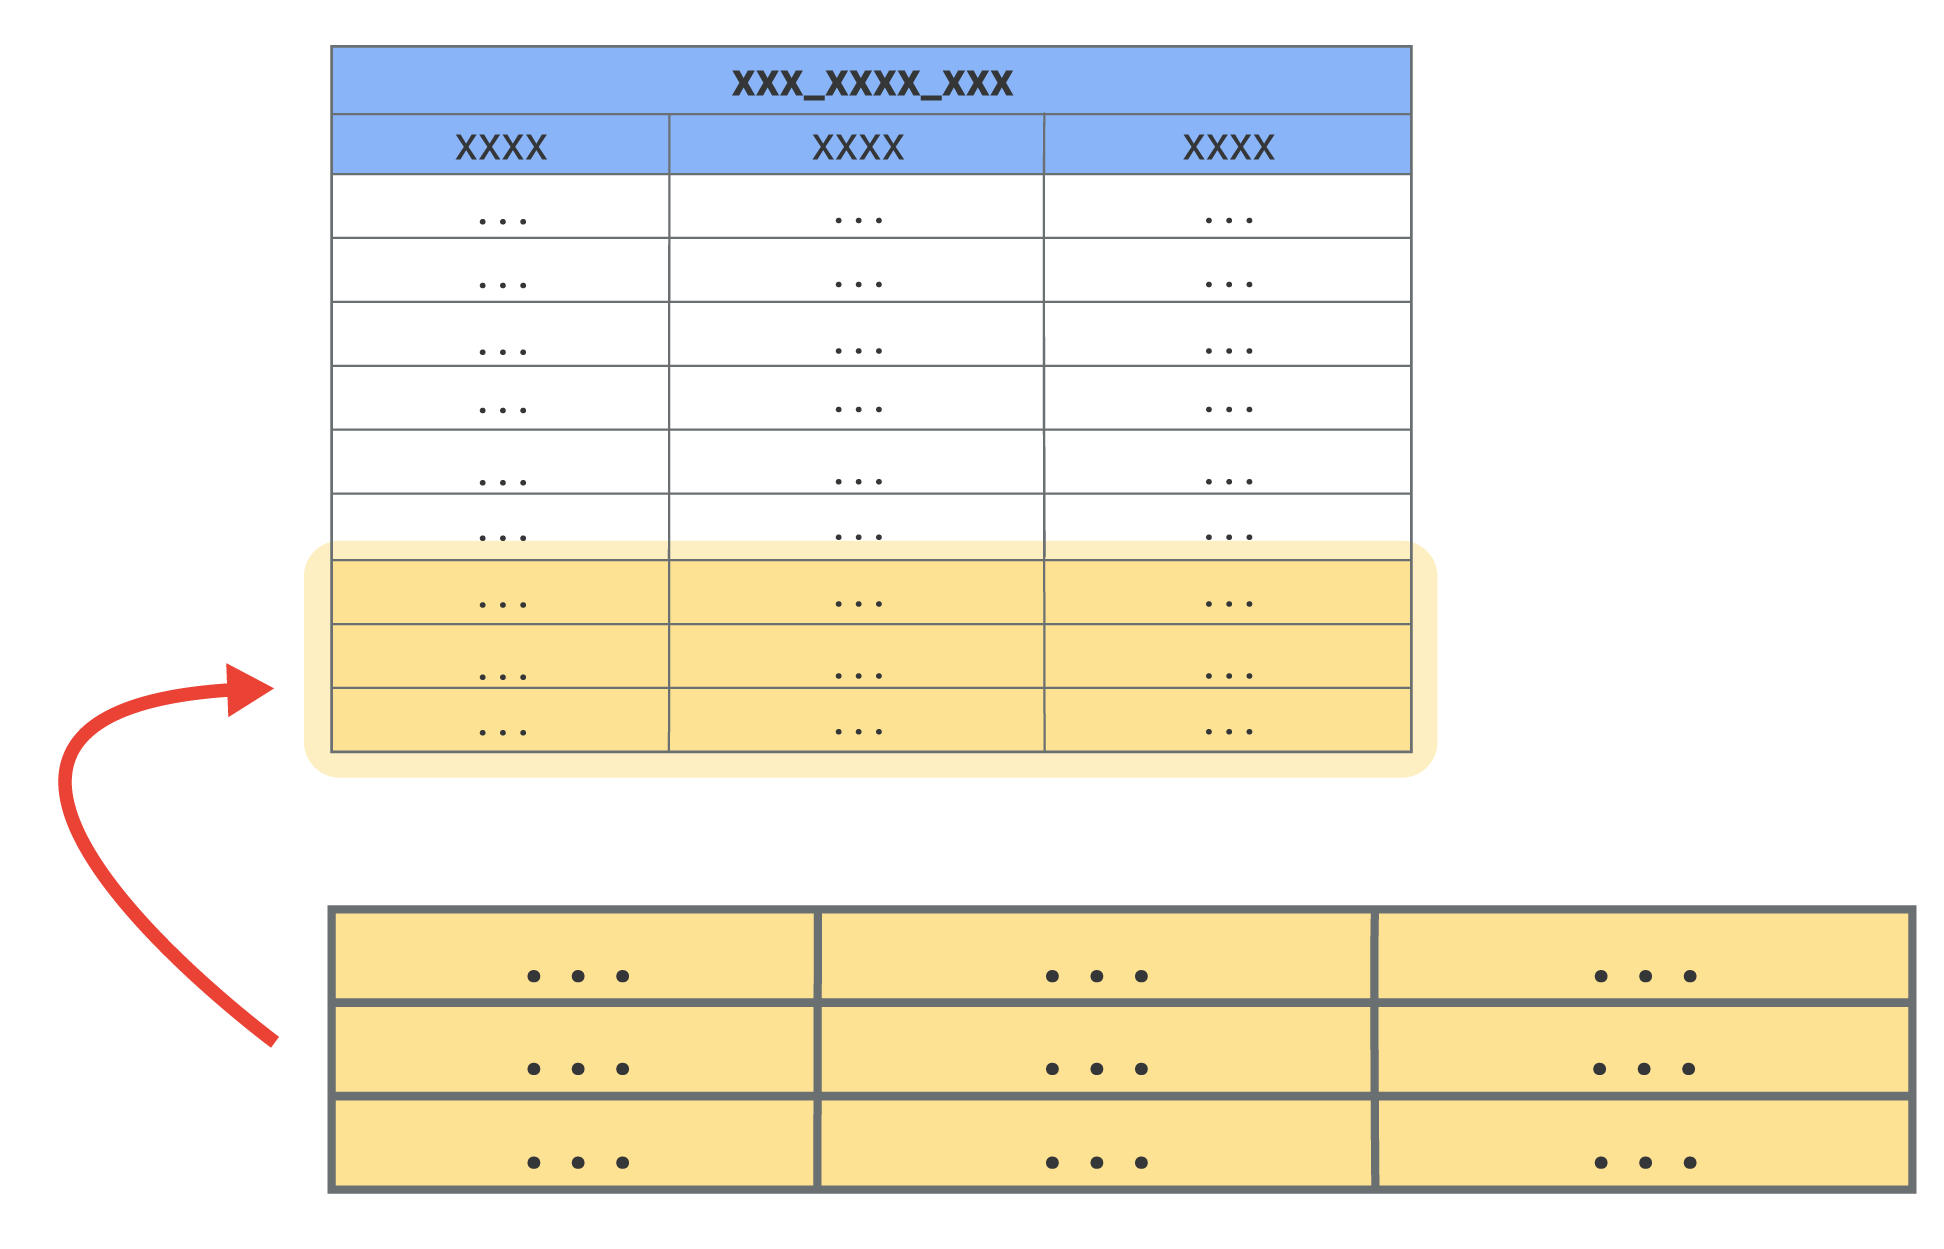 一个大型表格，其中突出显示了底部三行，以显示向表格中添加的少量新行。